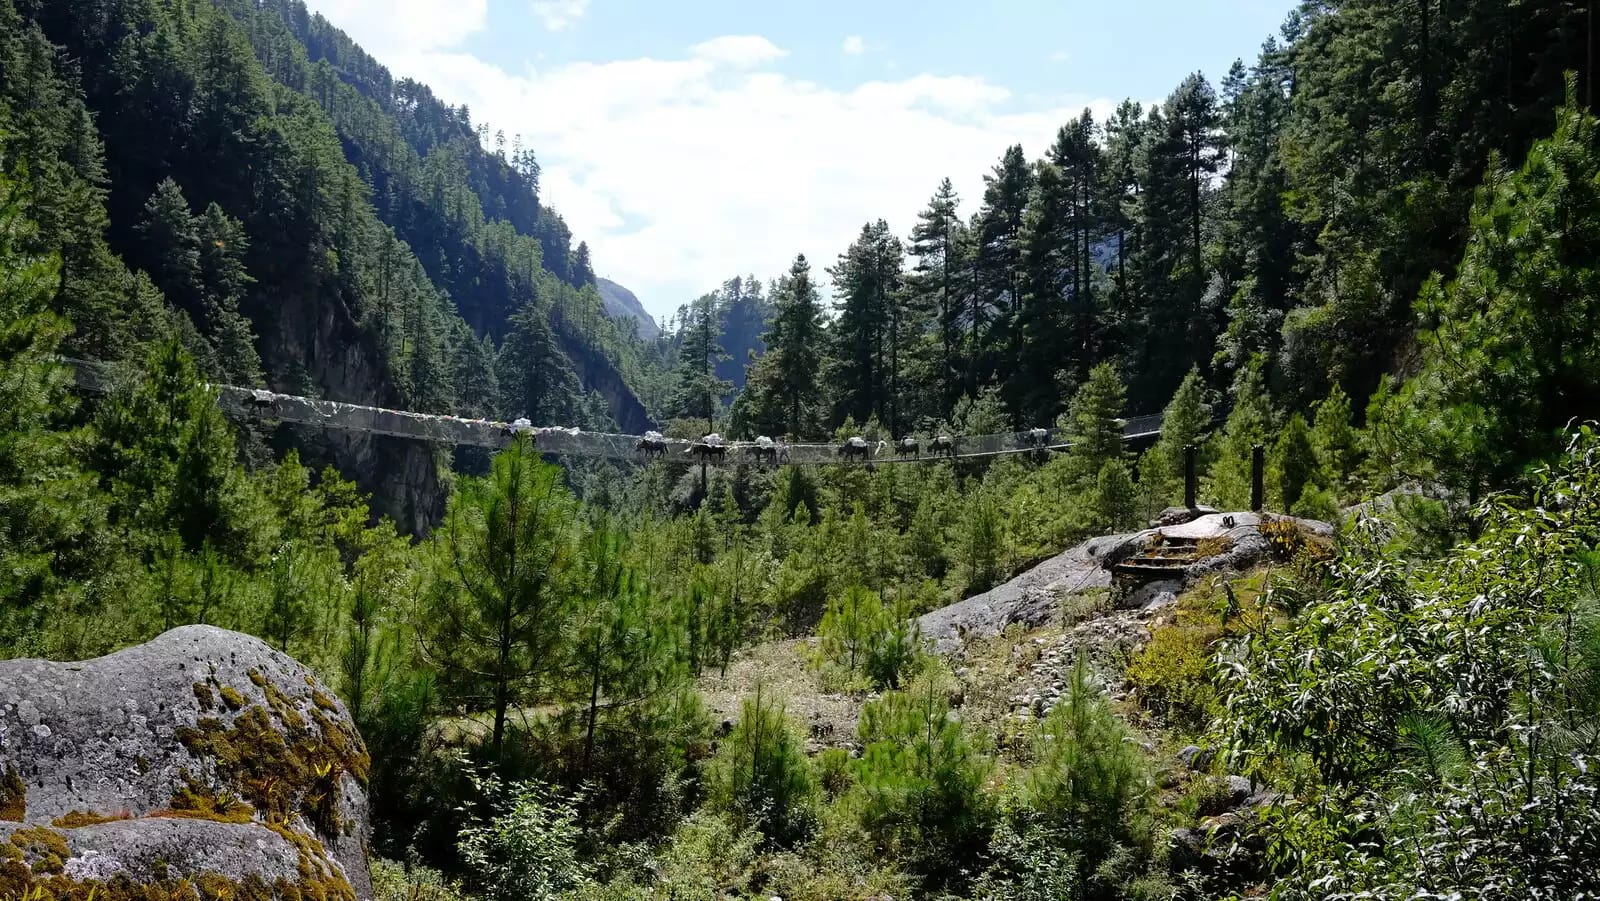 Suspension Bridge (In between Lukla and Namche)